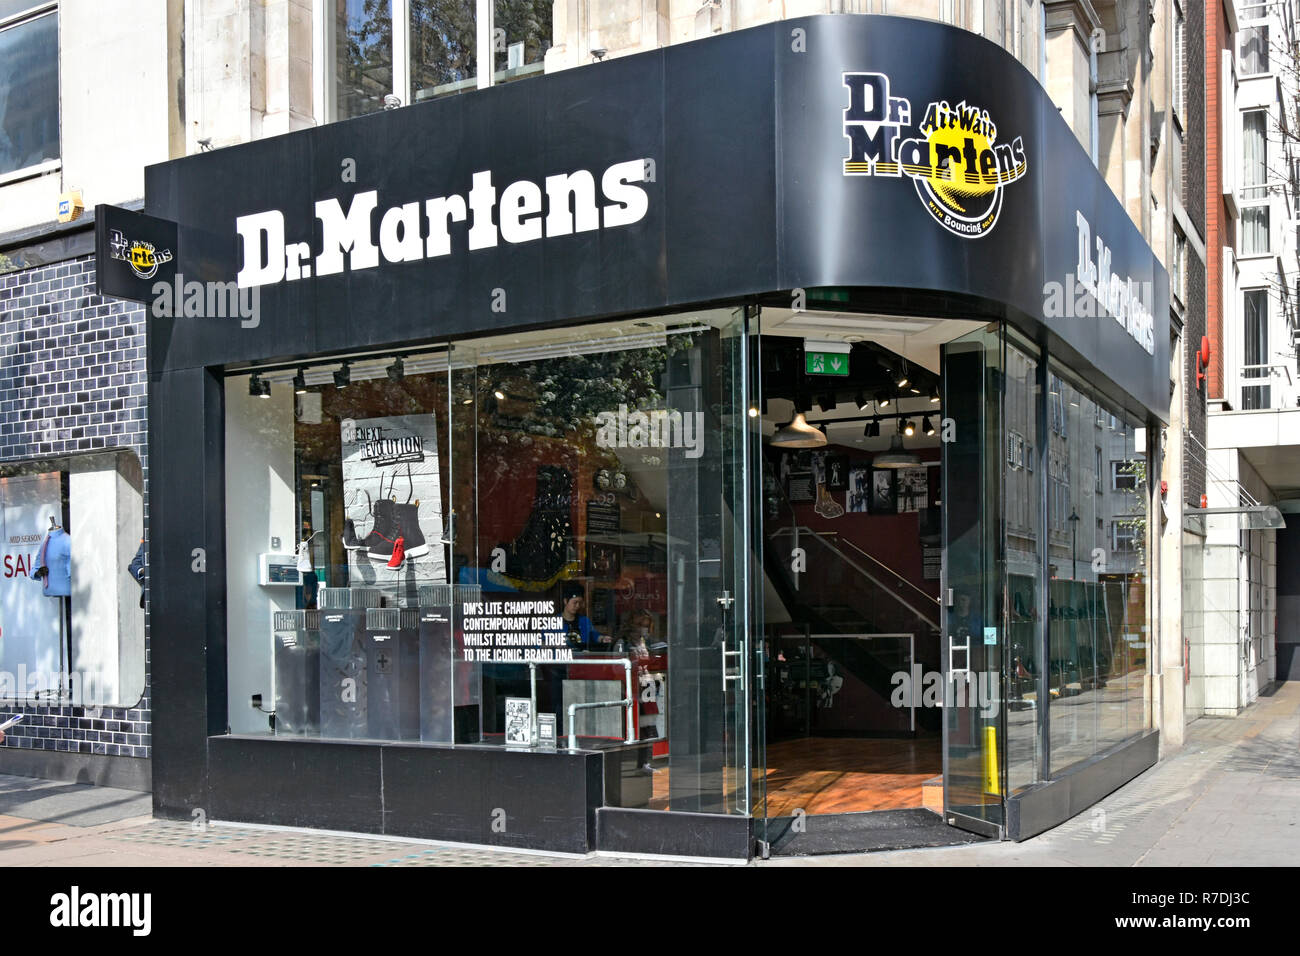 Dr Martens oder Doc Martens schuhe Schuhmacher & Kleidung Marke Schuh shop  vordere Fenster von Store verkaufen Schuhe Stiefel in der Oxford Street  London England Großbritannien Stockfotografie - Alamy